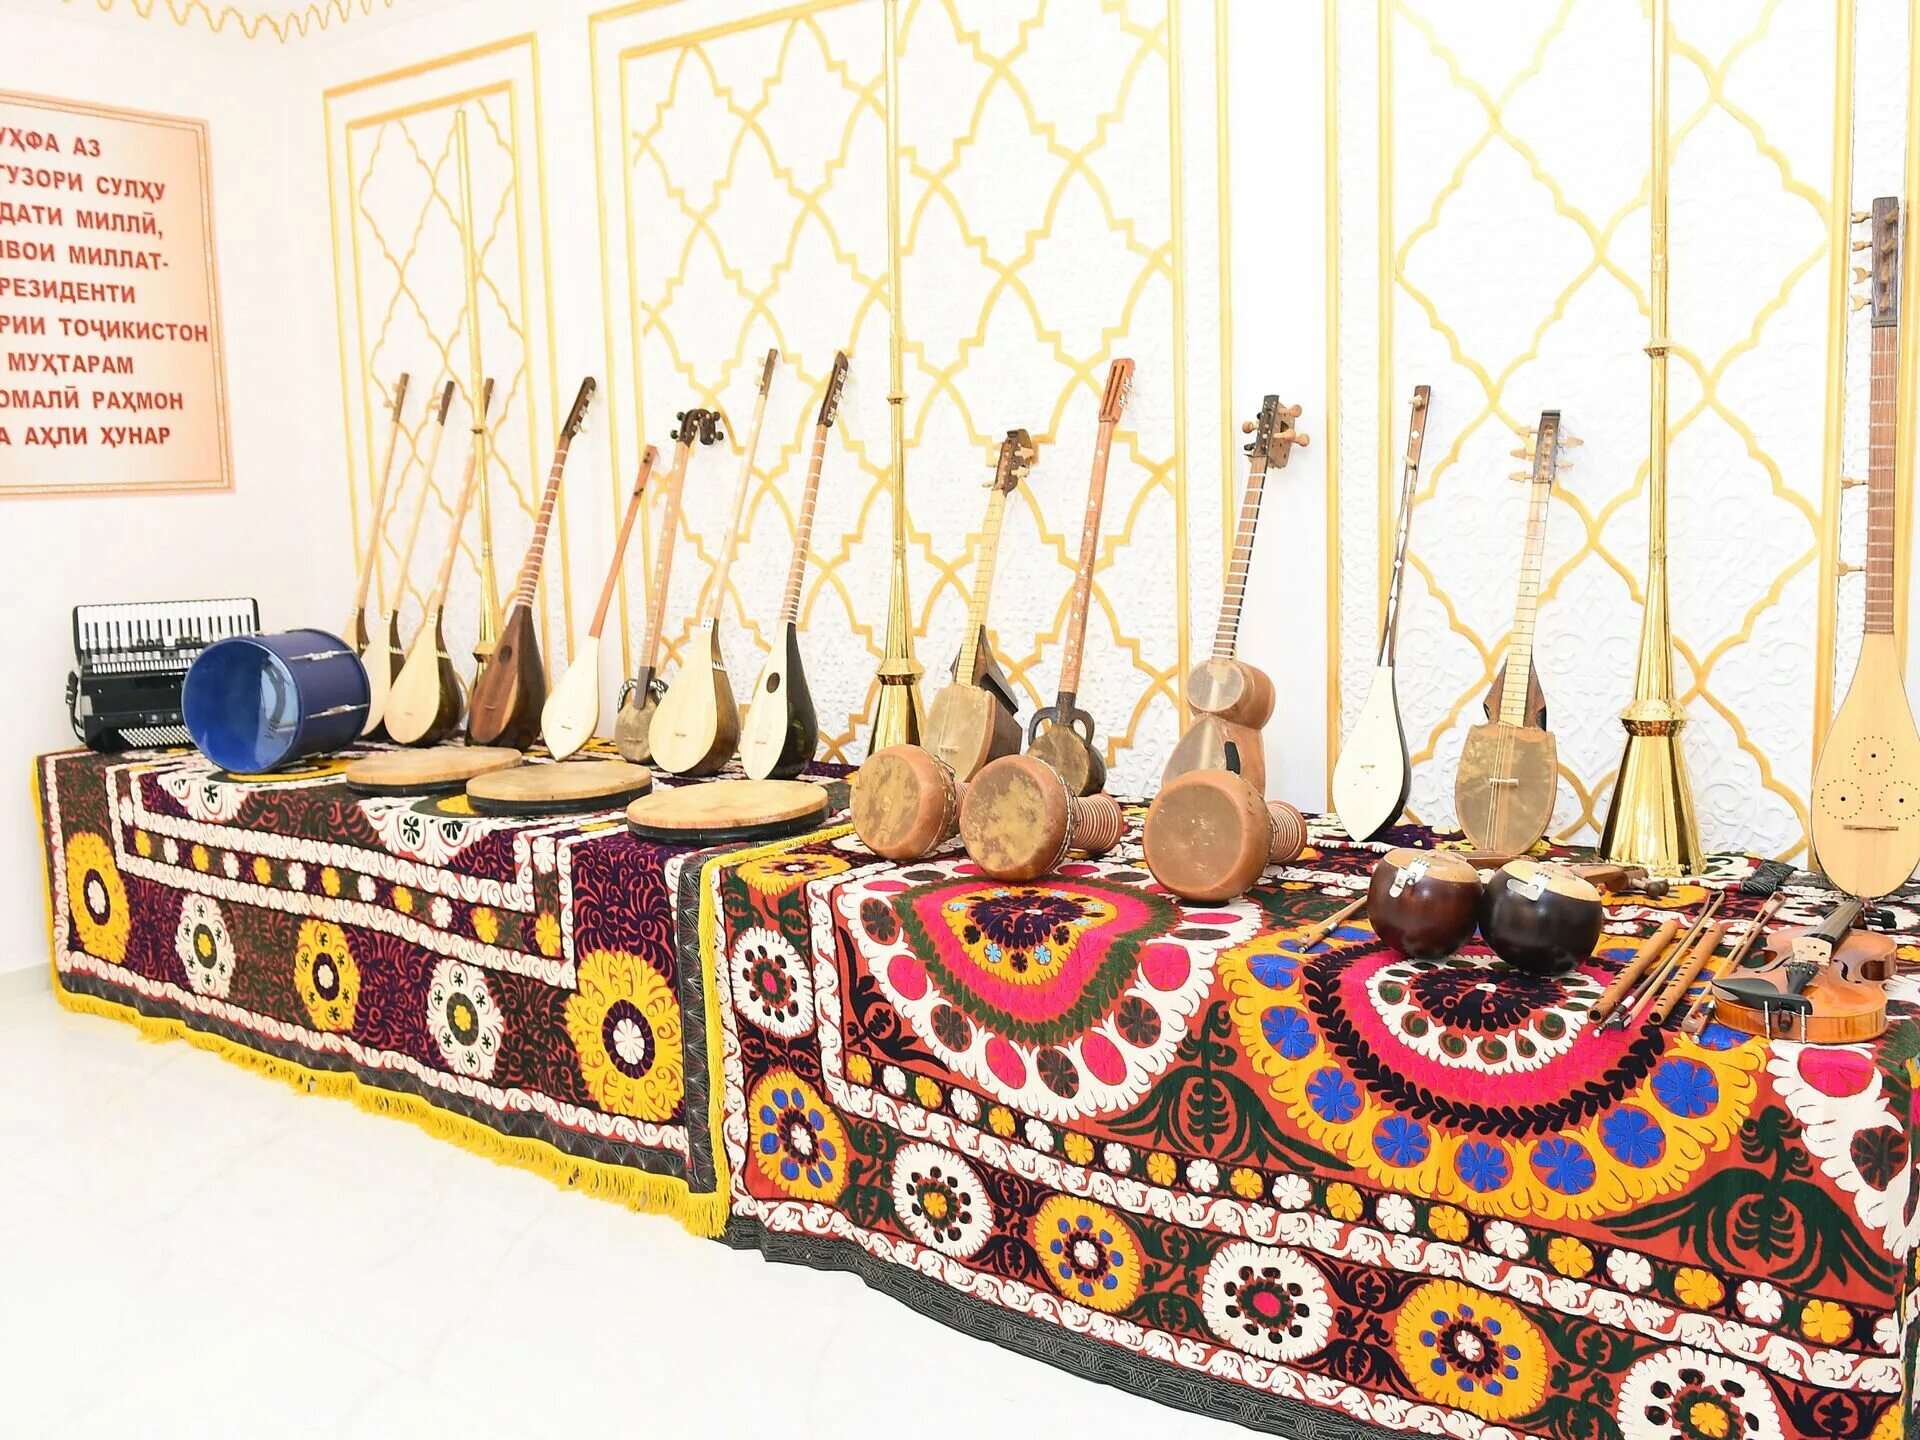 Карнай музыкальный инструмент Узбекистана. Нац музыкальные инструменты Таджикистана. Карнай музыкальный инструмент Таджикистана. Карнай музыкальный инструмент таджикские музыкальные.